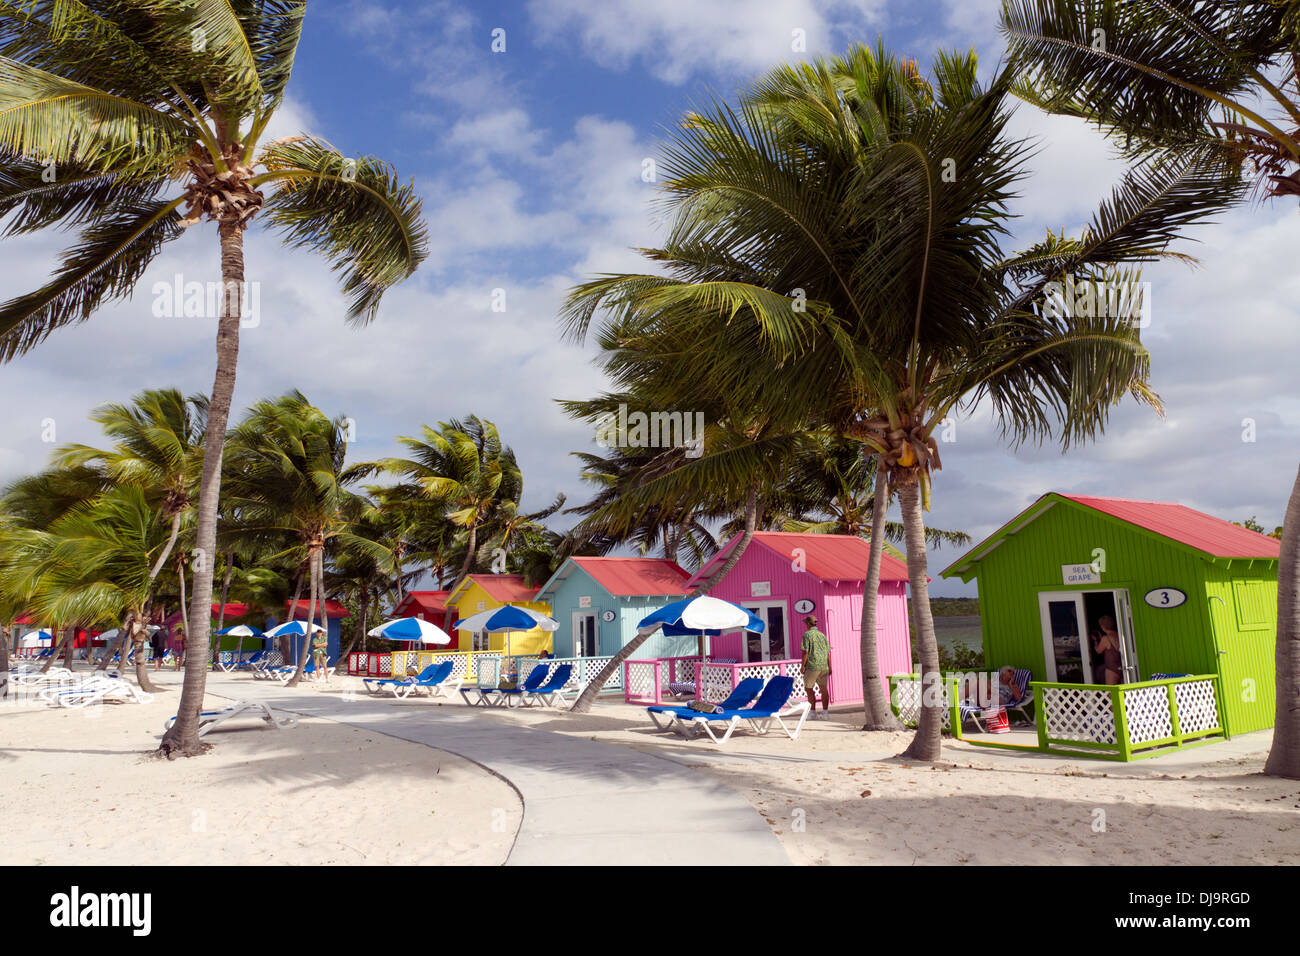 Cabines colorées sur la mer des Caraïbes sur l'île d'Eleuthera Bahamas Banque D'Images